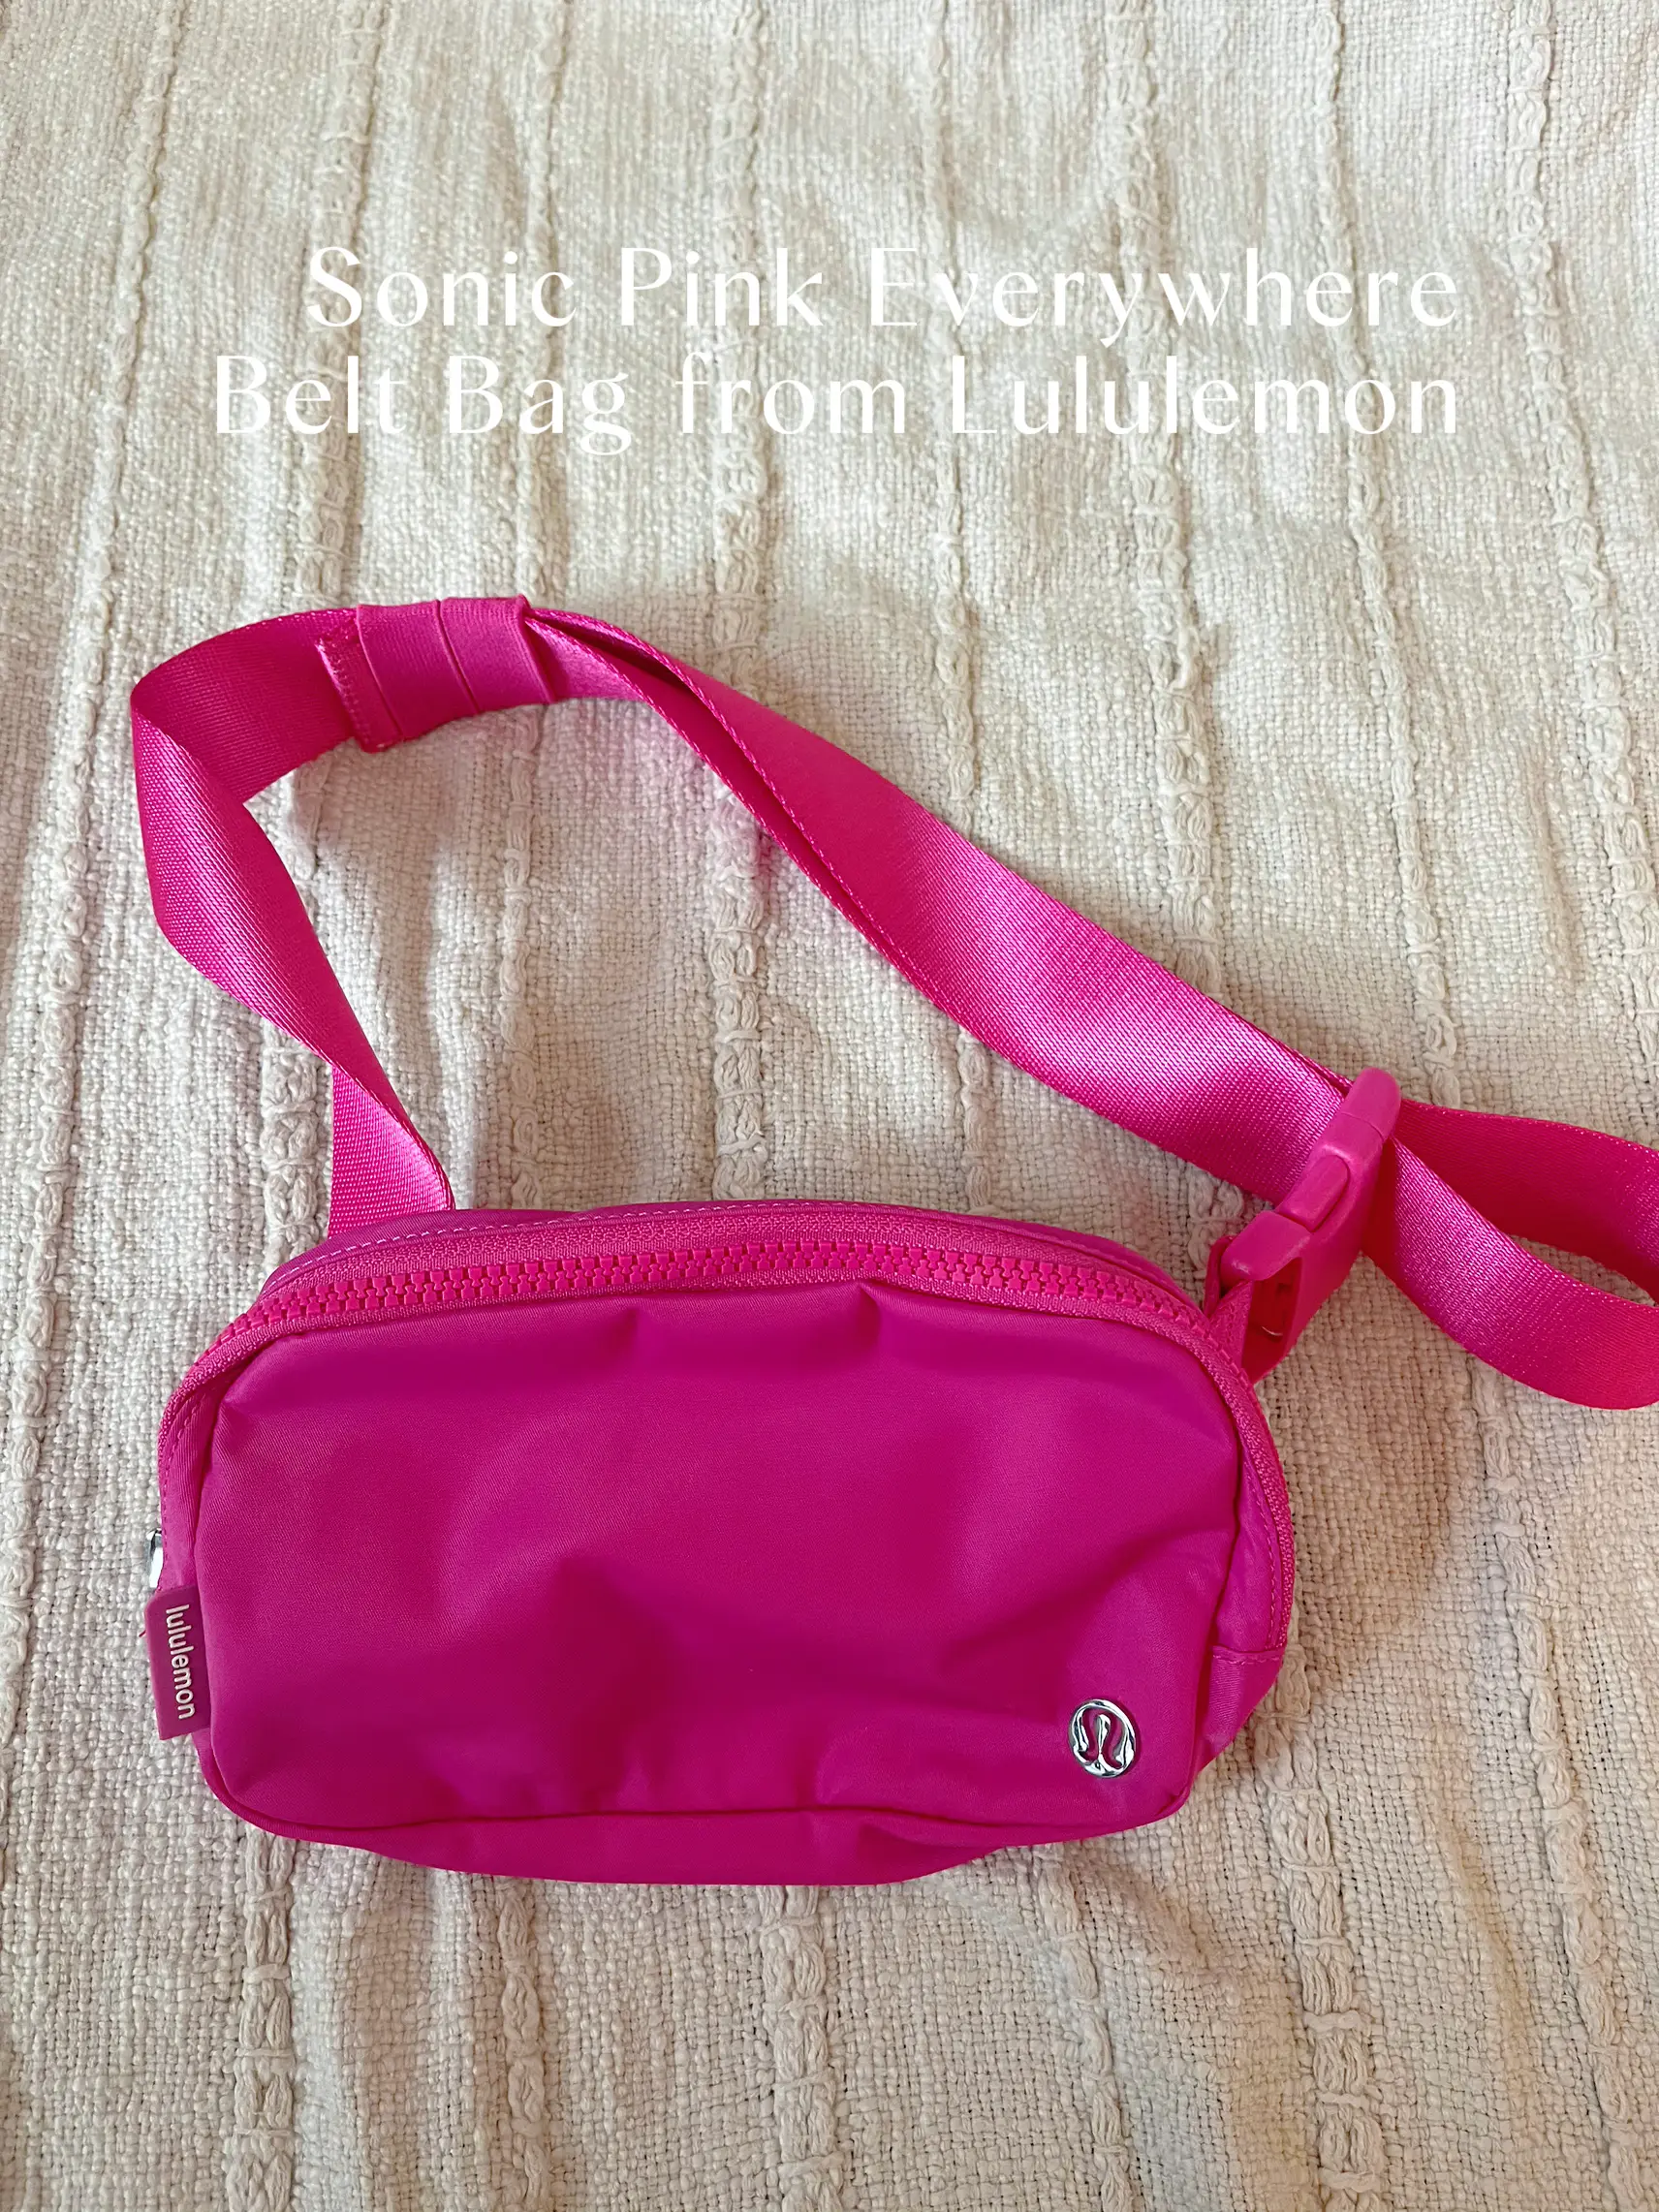 lululemon SONIC PINK BELT BAG JUST RESTOCKED!!! Also new belt bag and